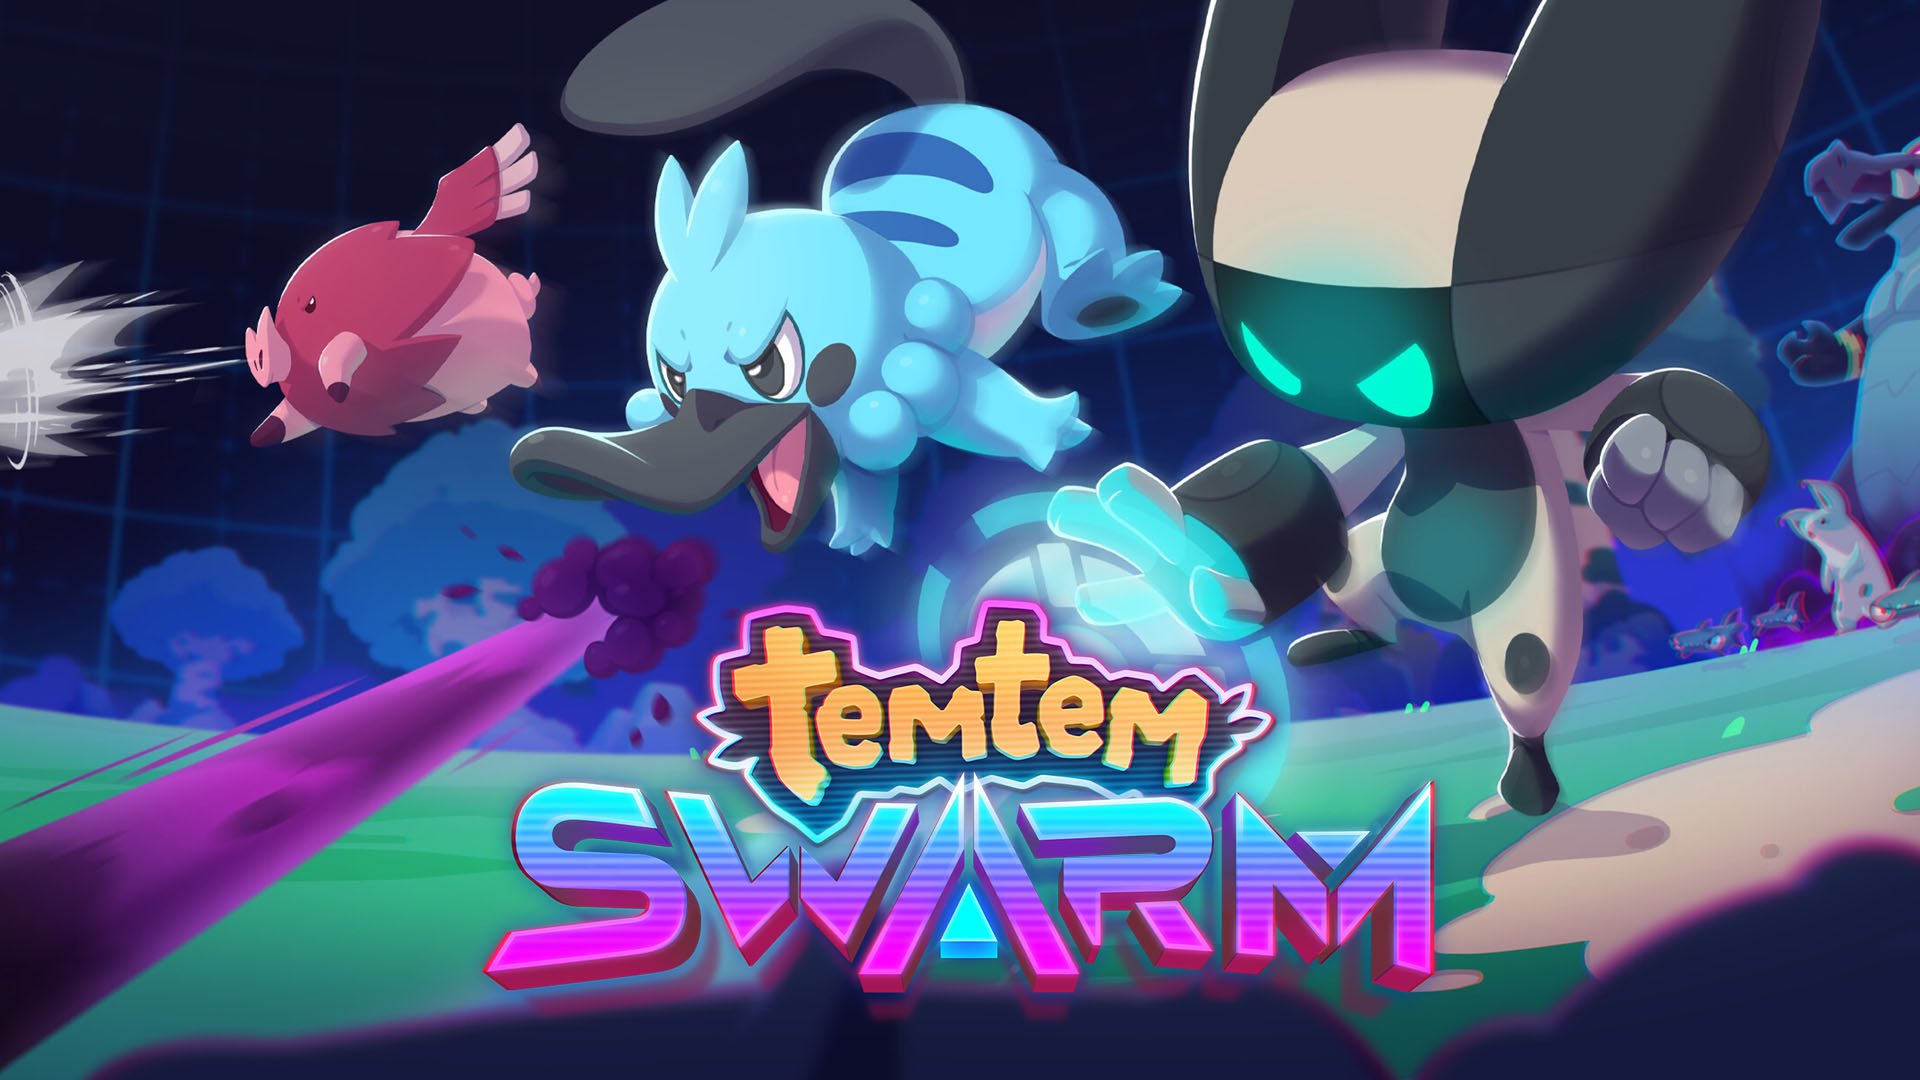 Crema ogłosiła Temtem: Swarm - nowy symulator fabularny stworzony od podstaw specjalnie z myślą o grze kooperacyjnej